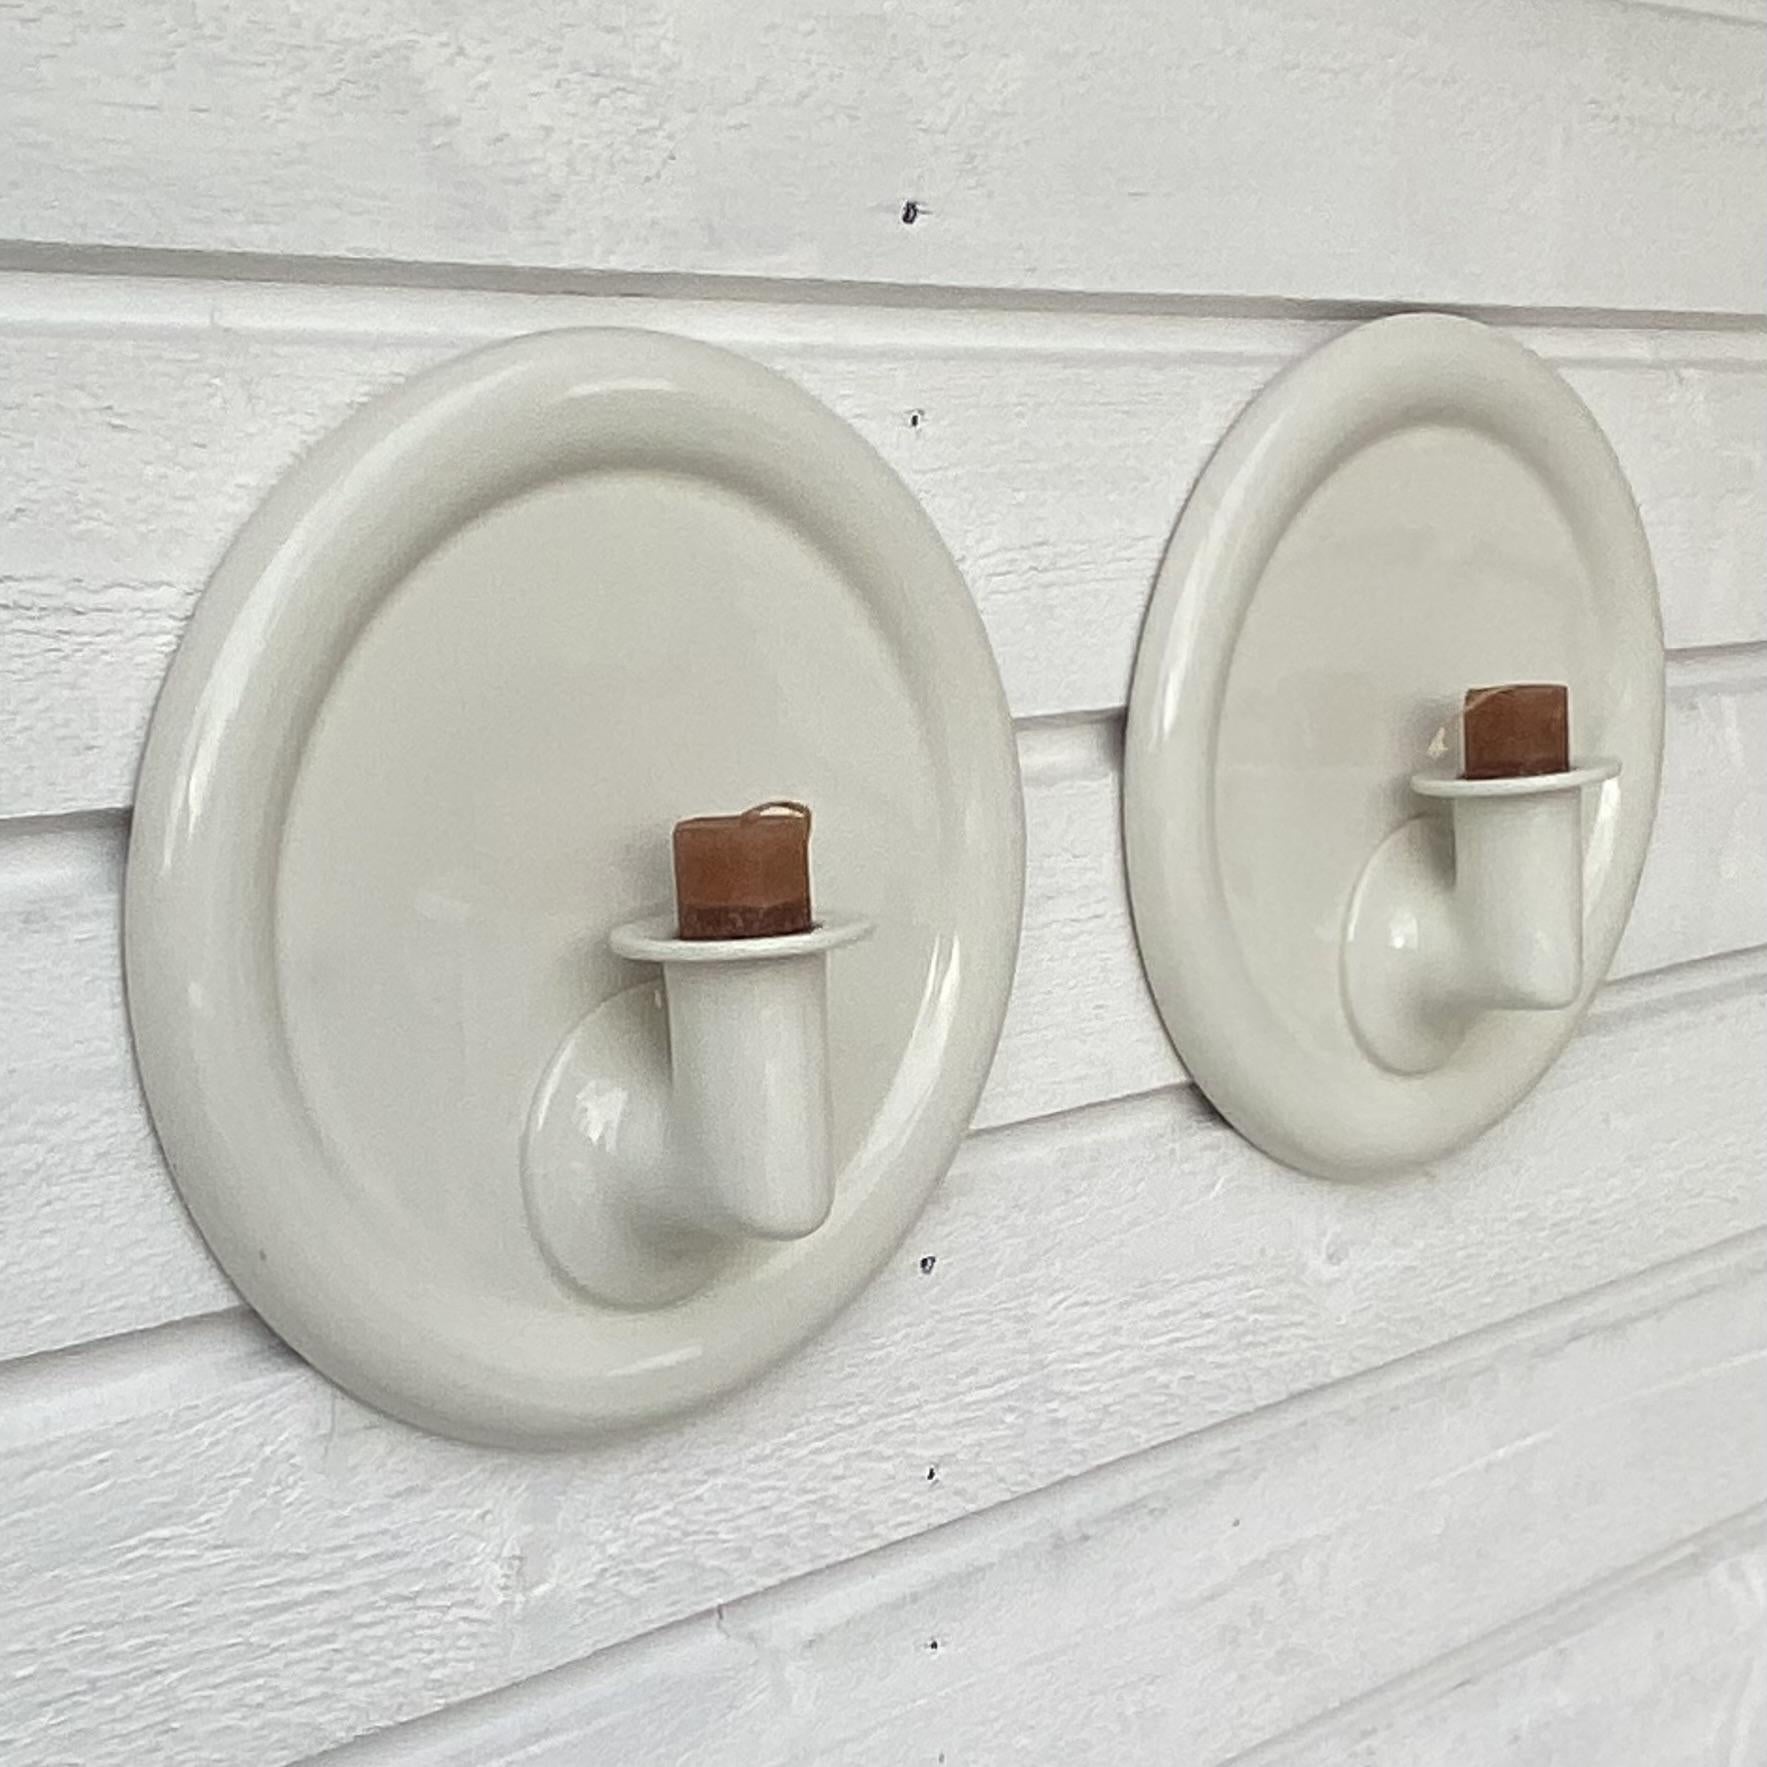 Ein Paar Wandleuchter aus Steinzeug, entworfen von der schwedischen Keramikkünstlerin Margareta Hennix für die Porzellanfabrik Gustavsberg. Die Leuchter sind minimalistisch gestaltet und bieten Platz für eine einzelne Stumpenkerze. Die 1941 in